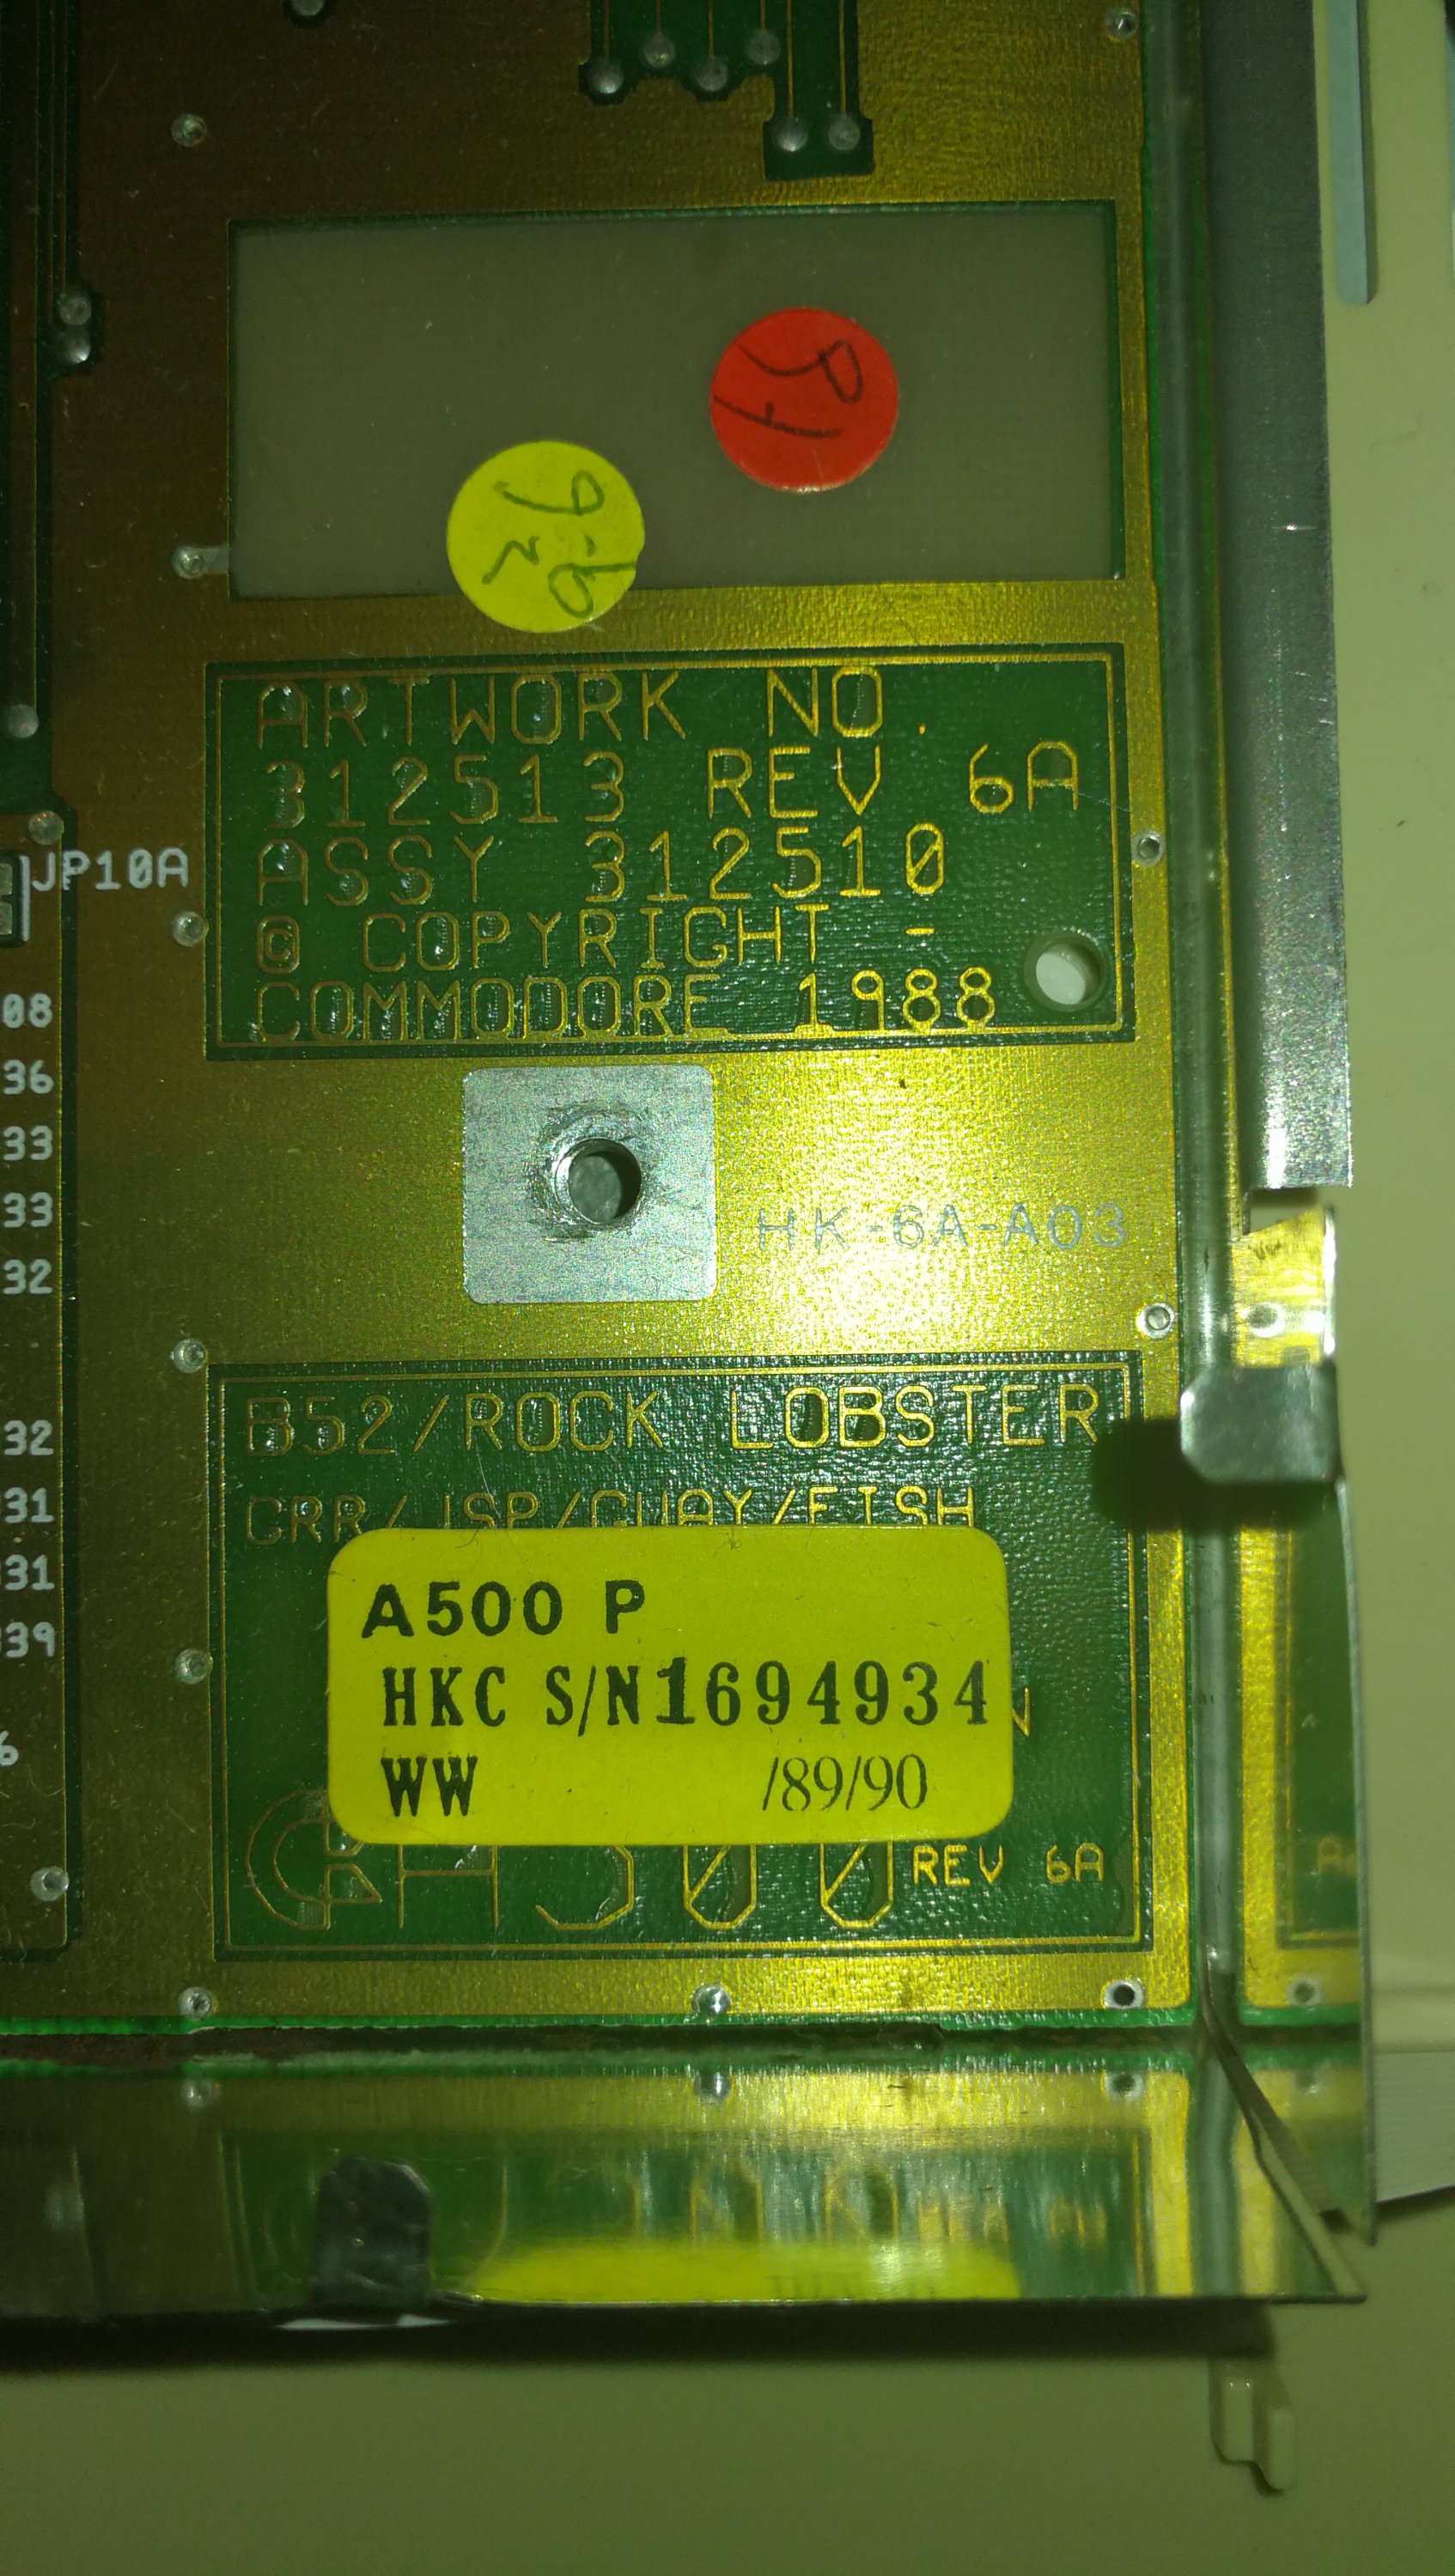 Amiga RAM Mattoncini 1 MB per Amiga 500/A500 #02/22 